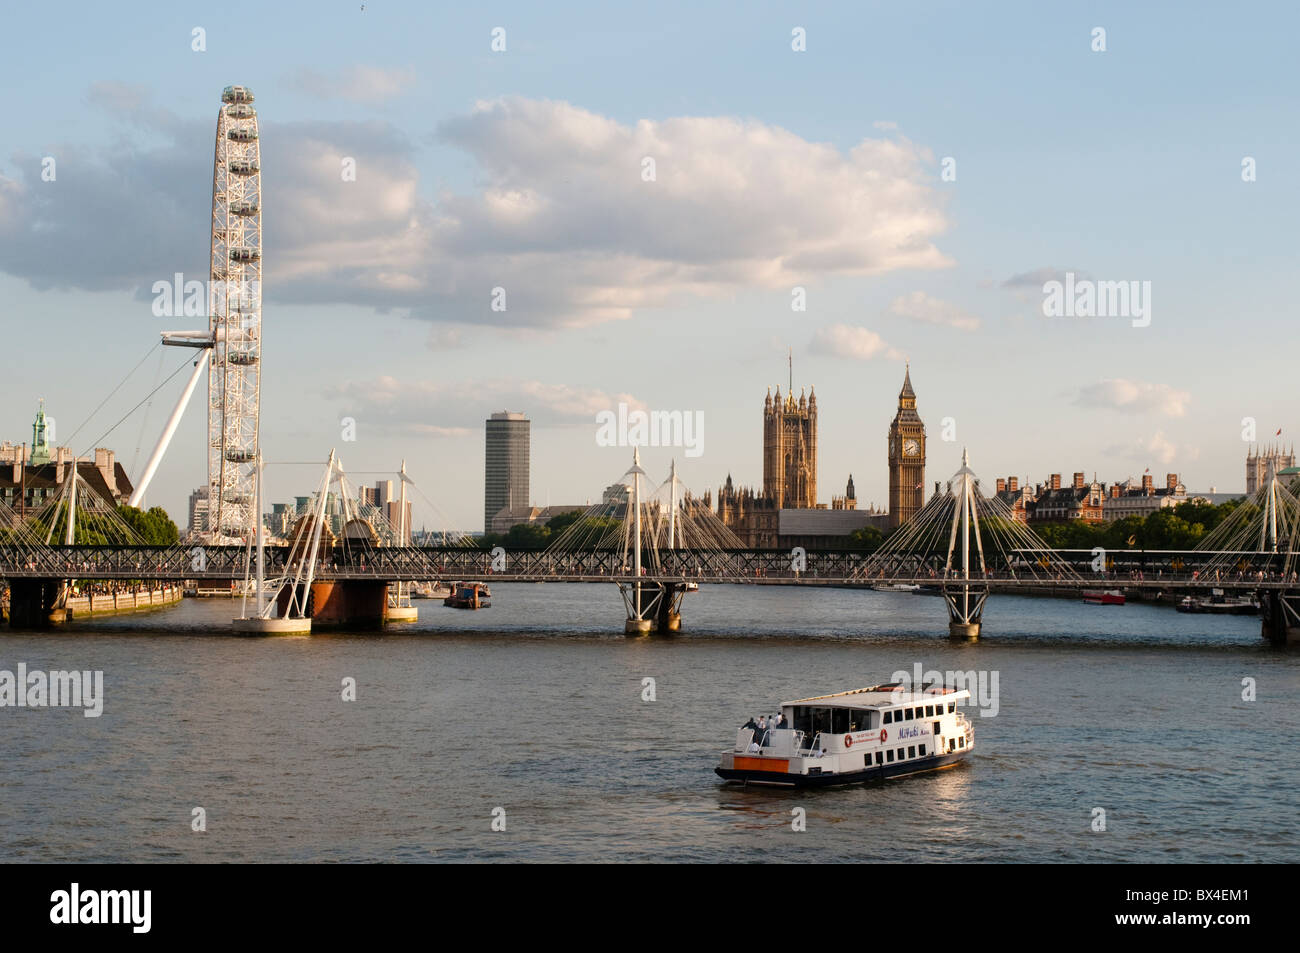 Skyline von London mit Hungerford Bridge, London Eye und Houses of Parliament, London, UK Stockfoto